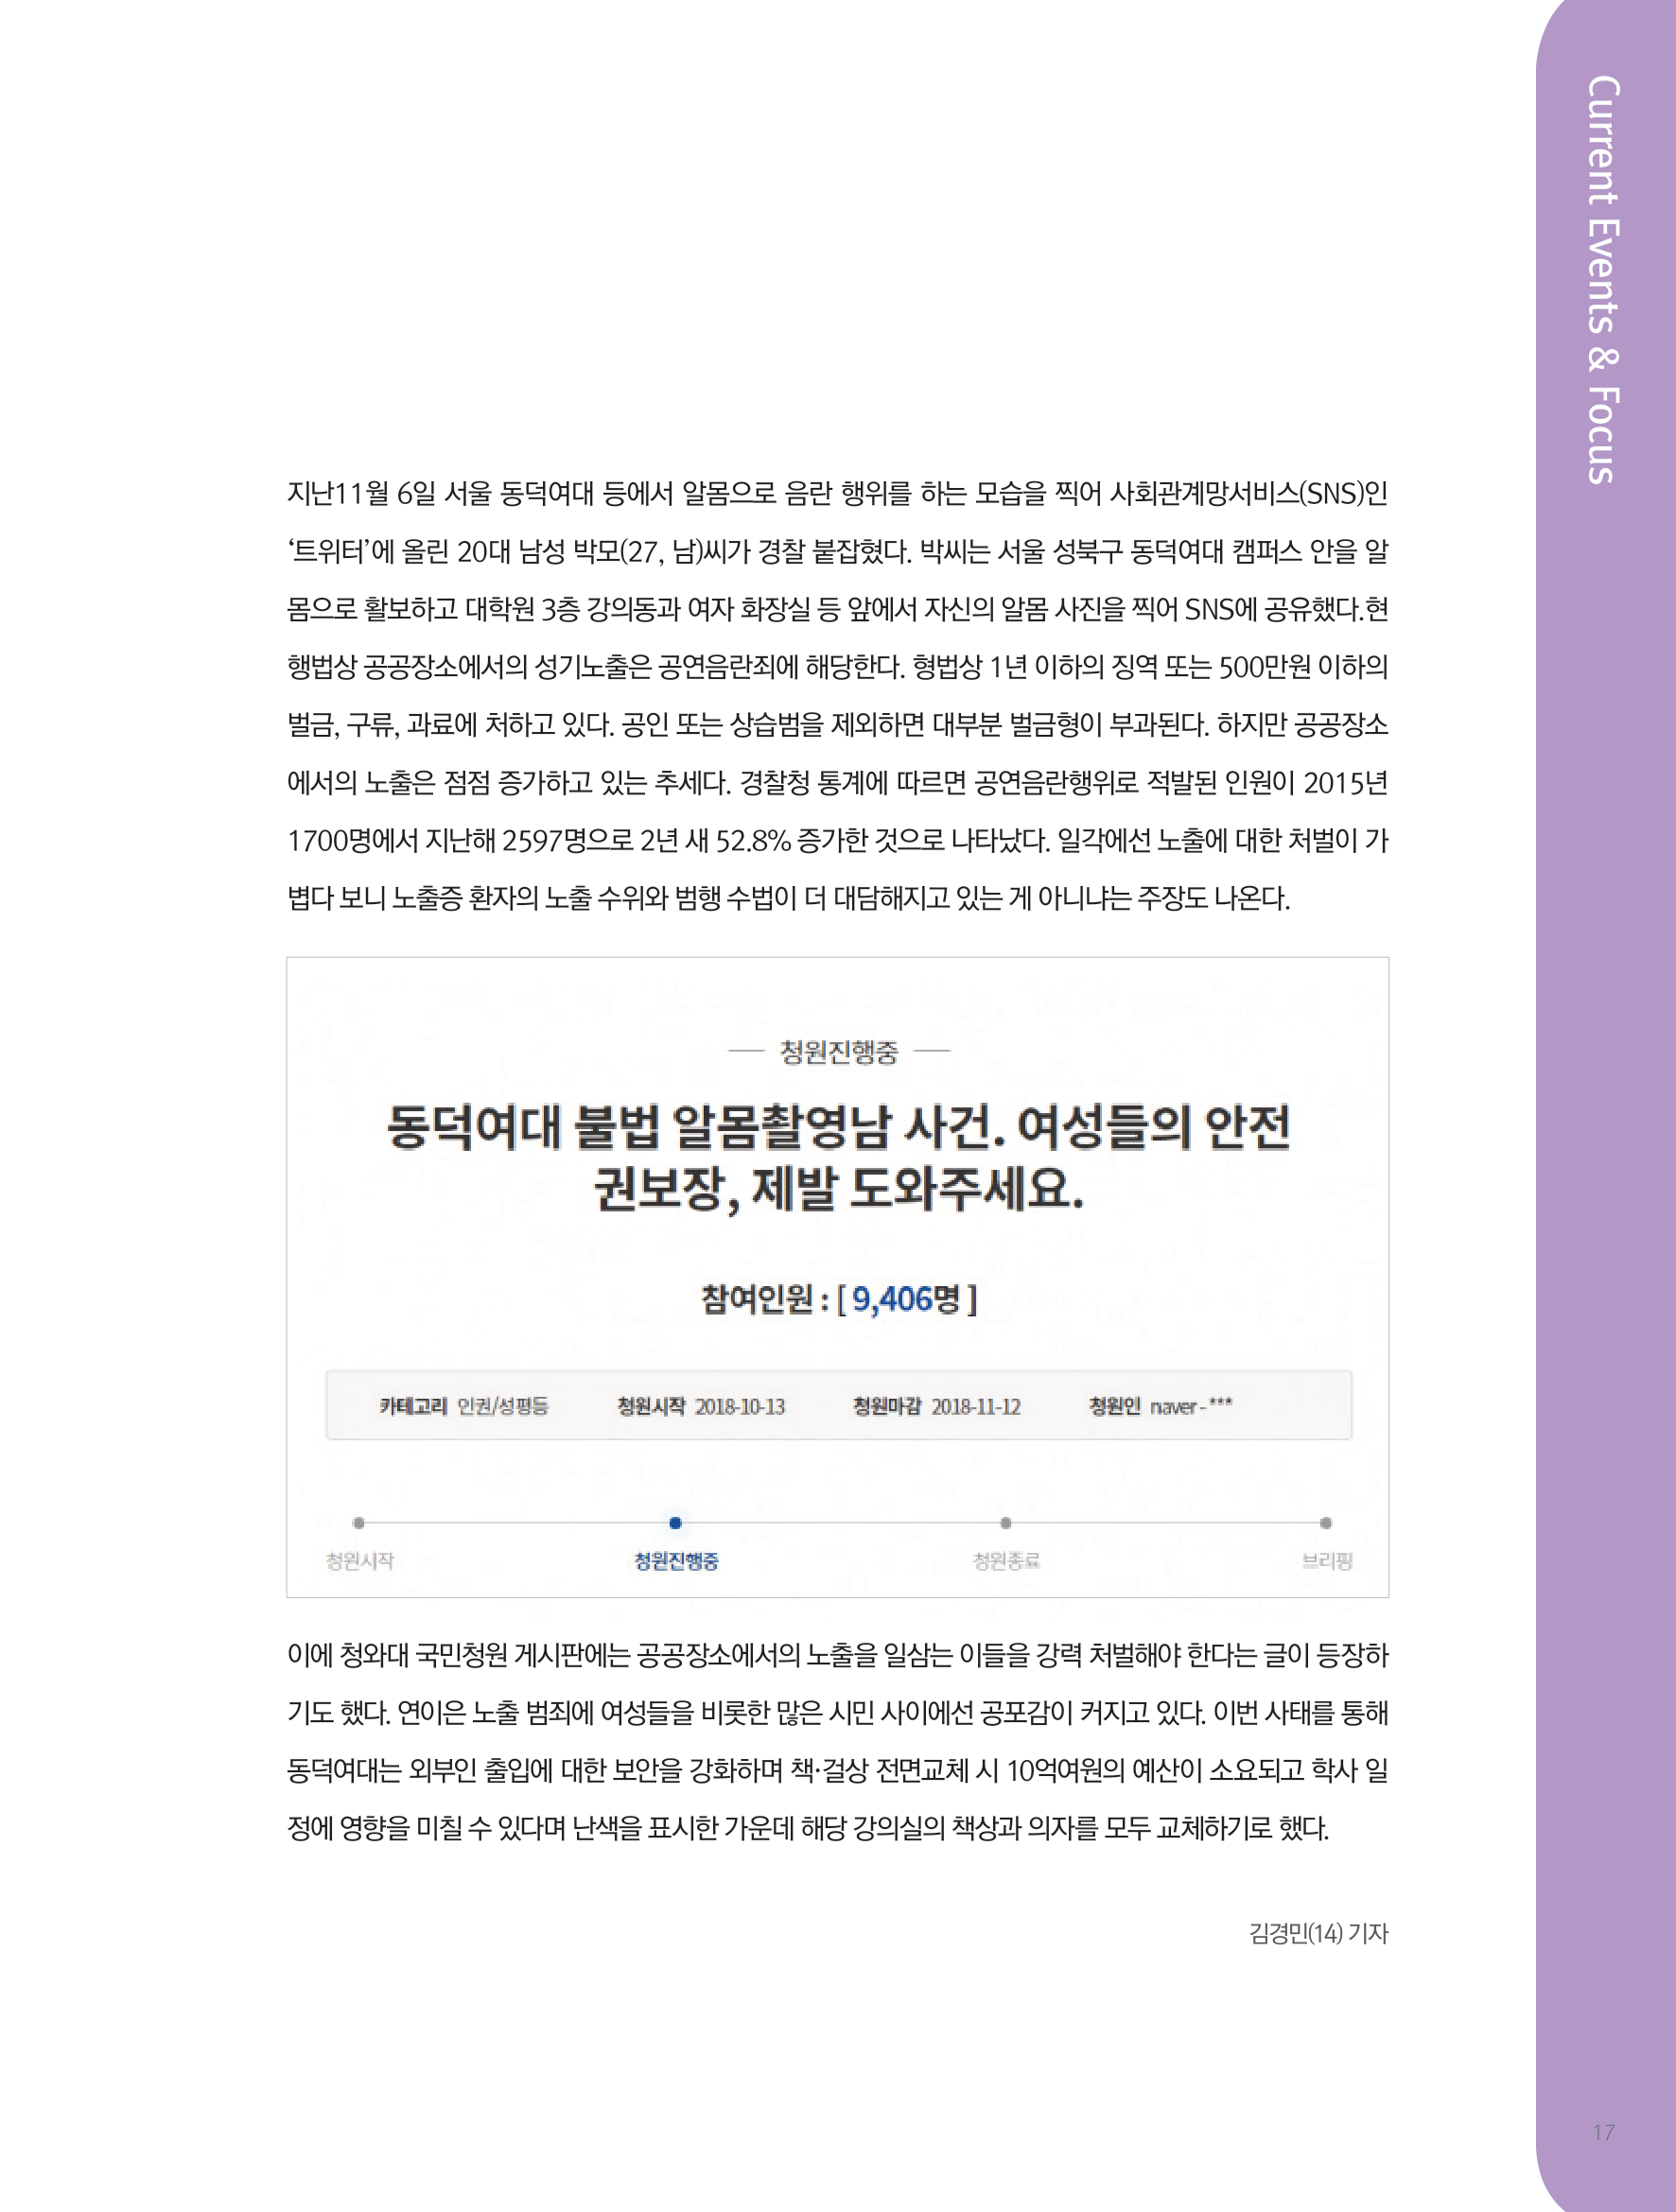 뜻새김 신문 72호 17